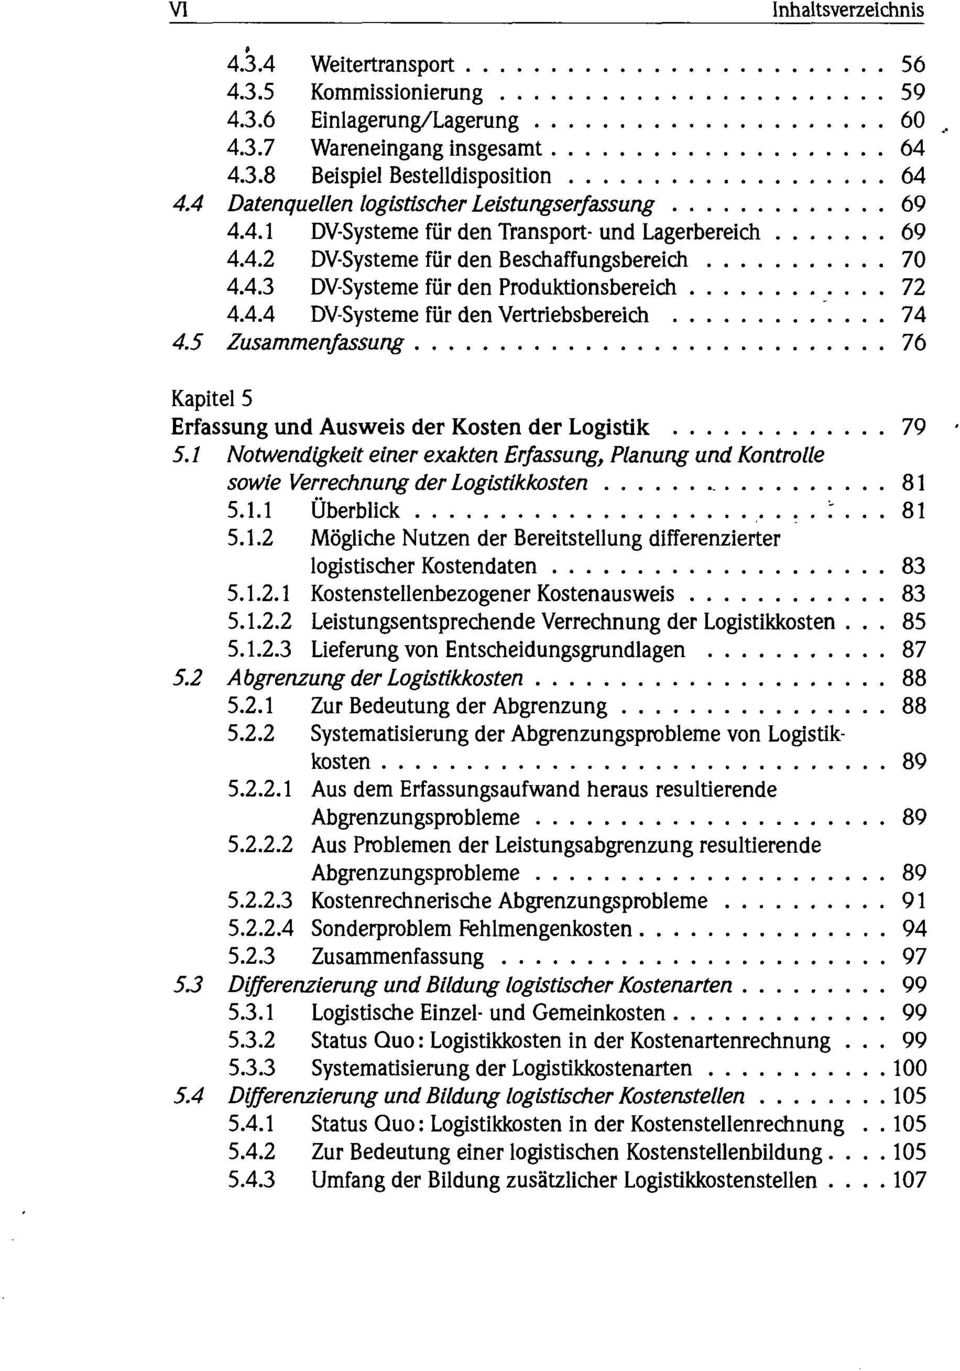 4.4 DV-Systeme für den Vertriebsbereich 74 4.5 Zusammenfassung 76 Kapitel 5 Erfassung und Ausweis der Kosten der Logistik 79 5.